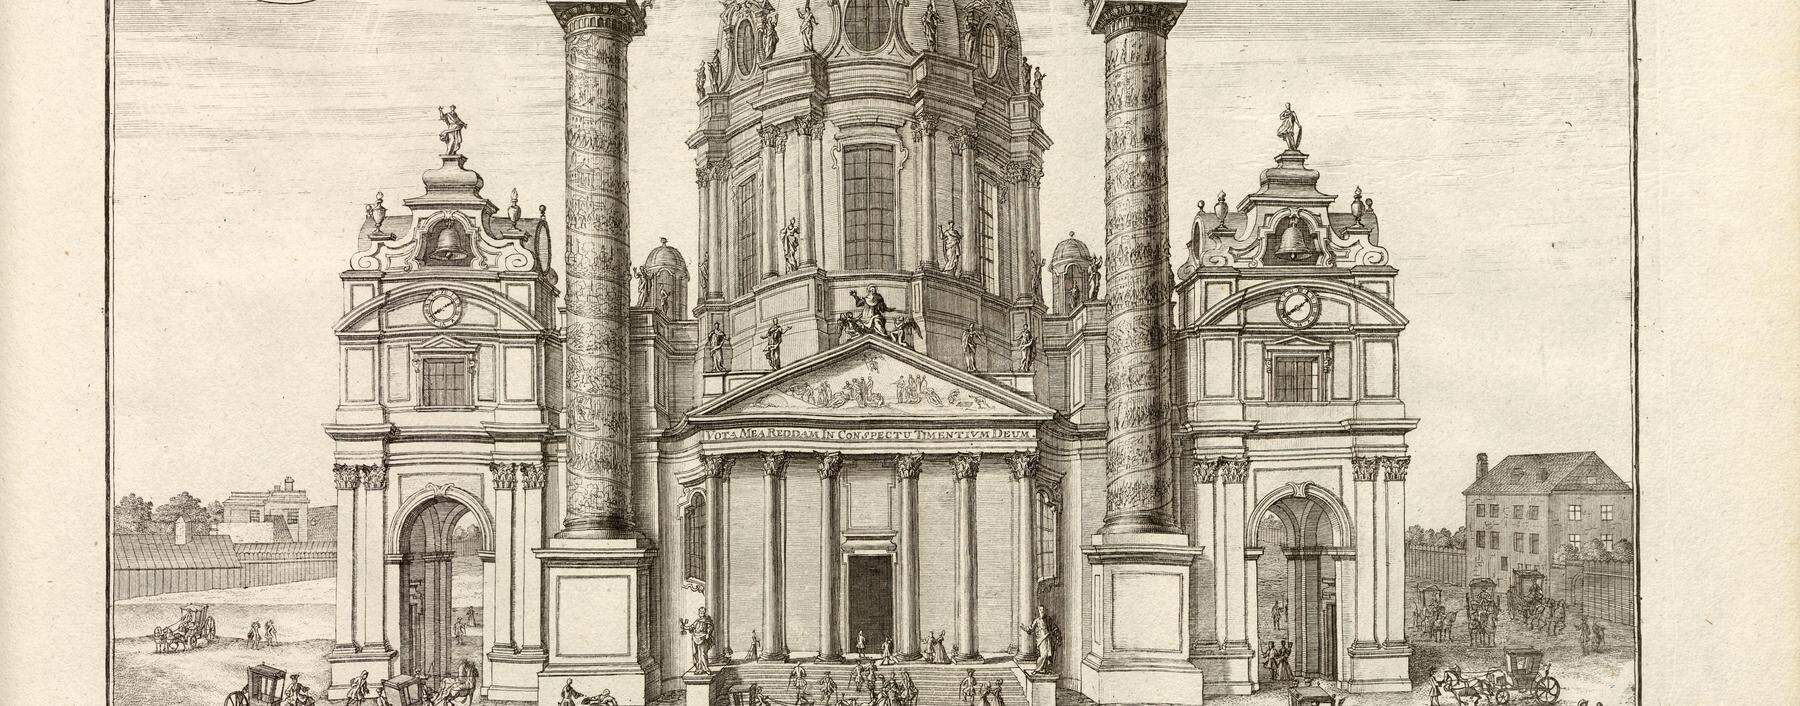  Ein Gotteshaus mit Tempelfront und Säulen nach antikem Vorbild: Fischer von Erlachs Karlskirche in Wien in einer Illustration des 18. Jahrhunderts.